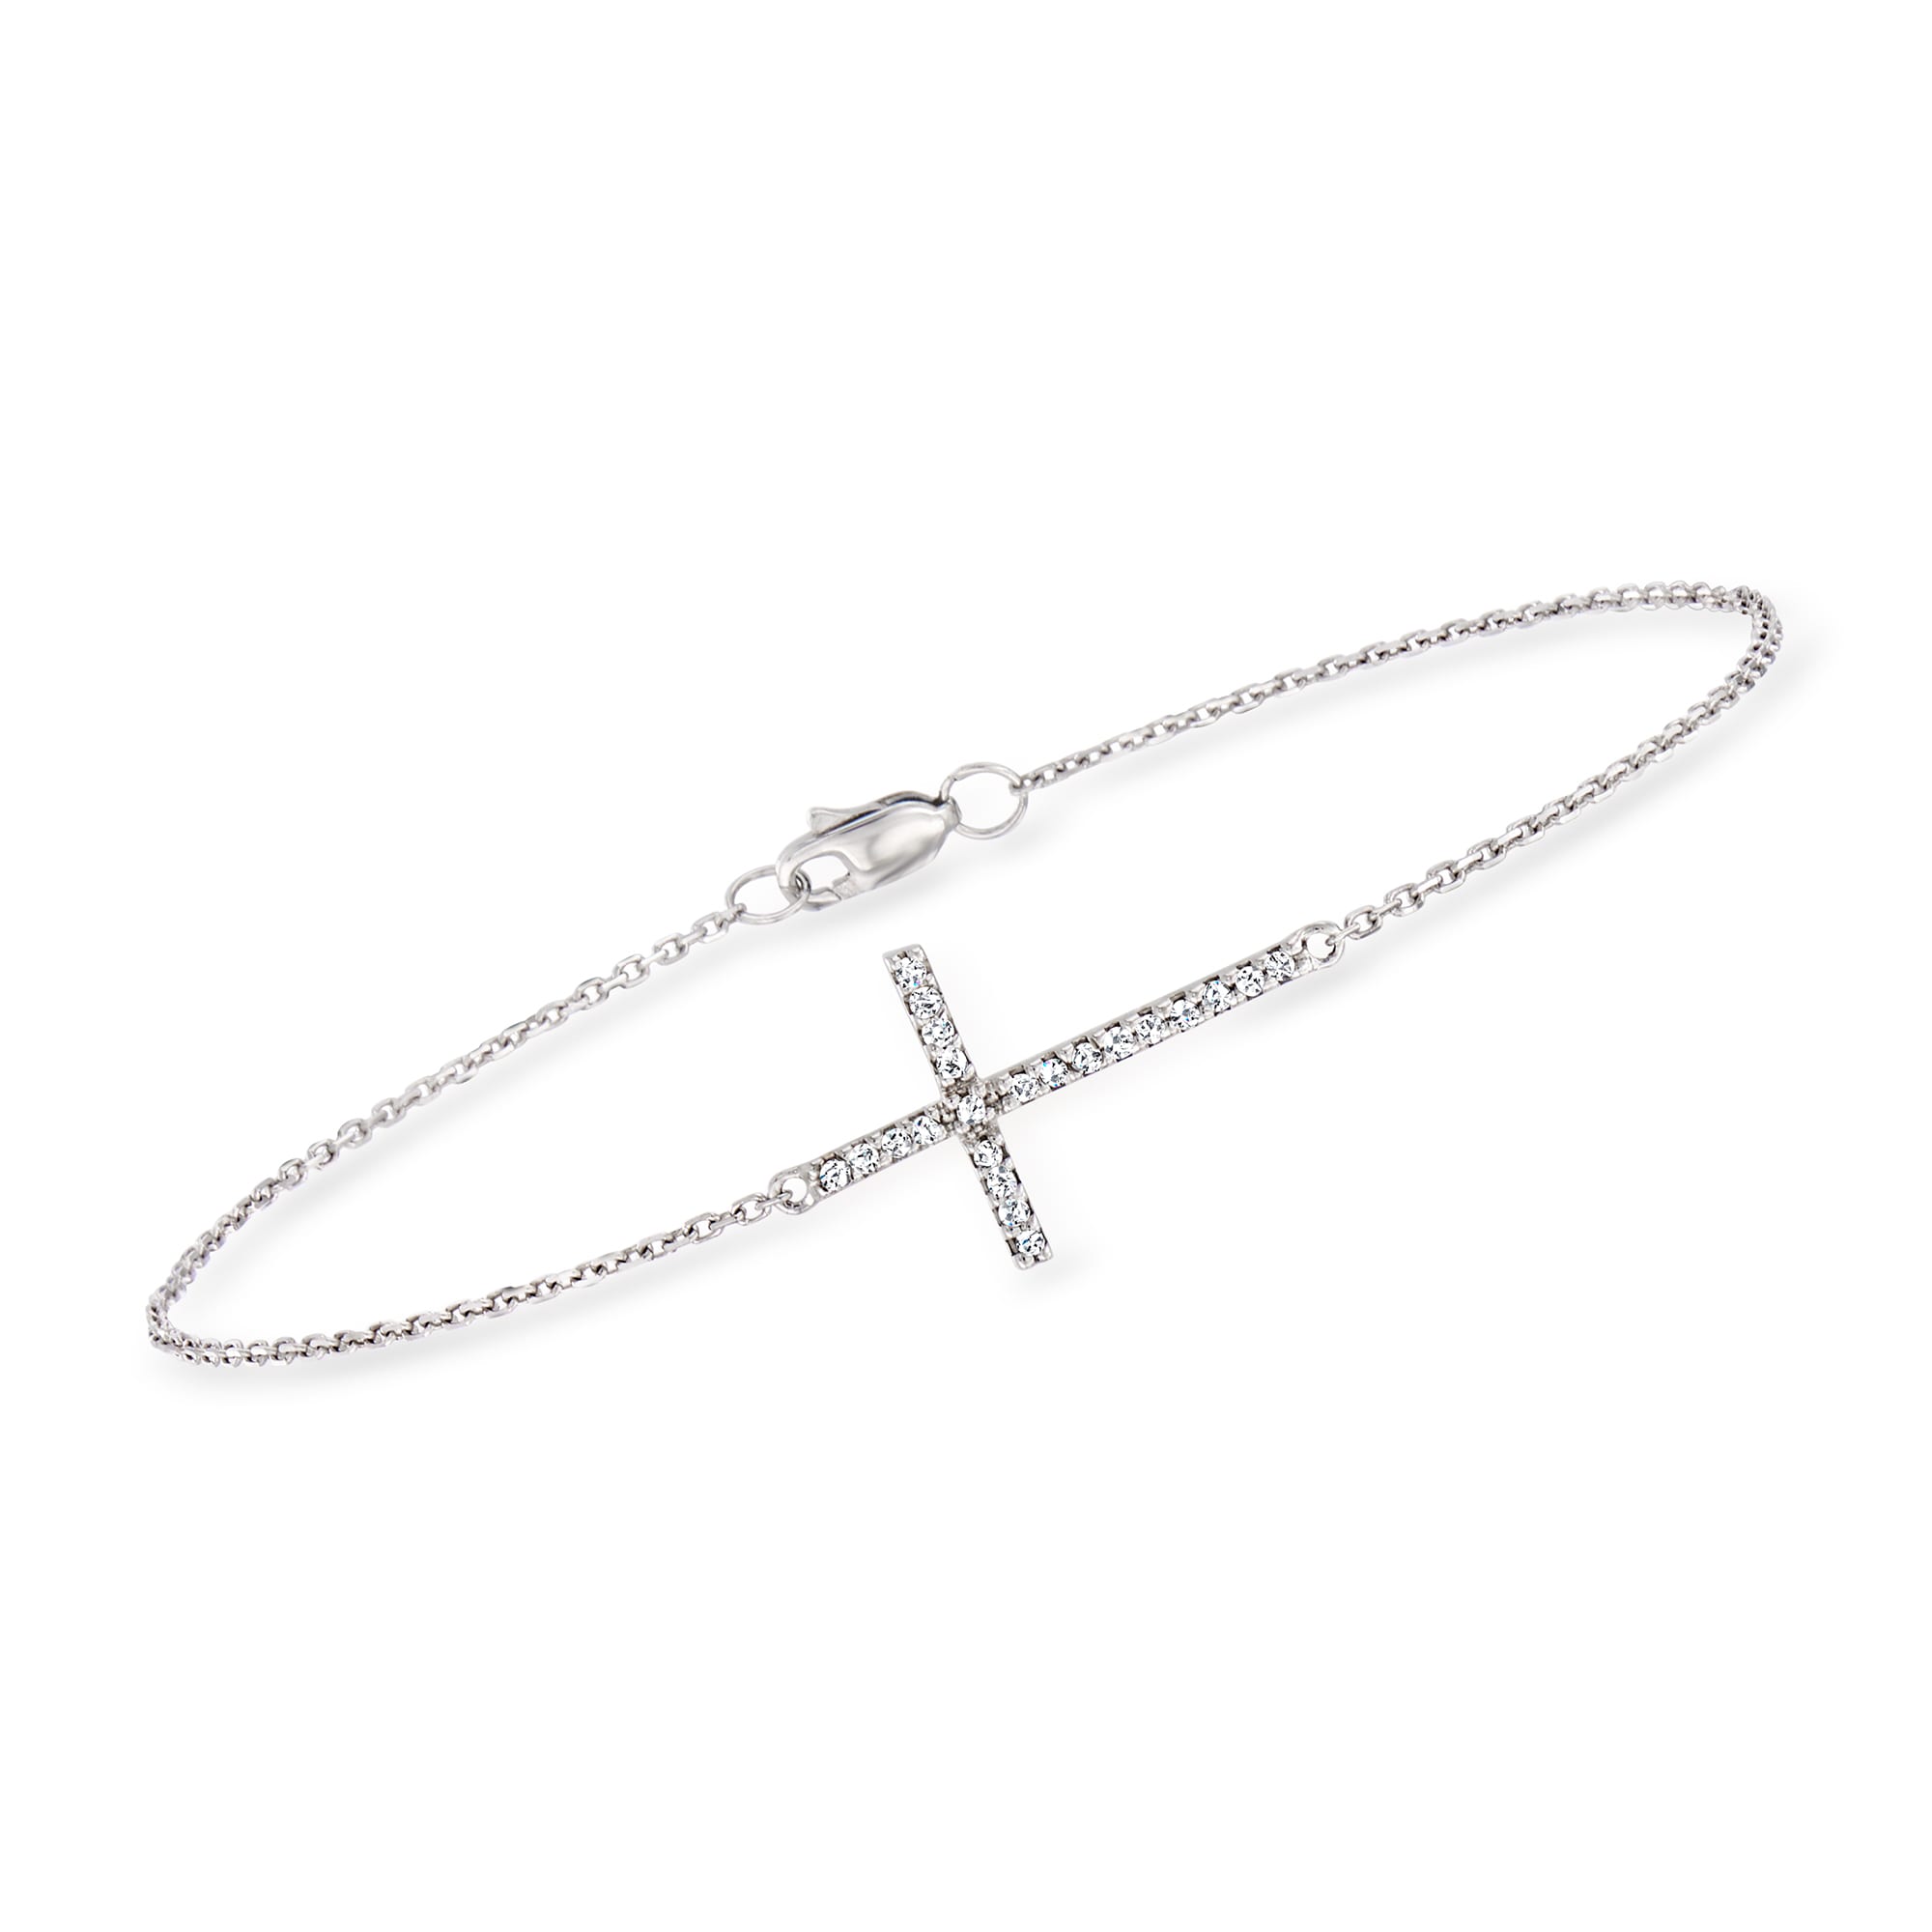 Diamond Cross Bracelet / 14k White Gold Diamond Cross / Small Diamond Cross  / Baptism Gift / Communion / Christmas Gift / Religious / Cross - Etsy